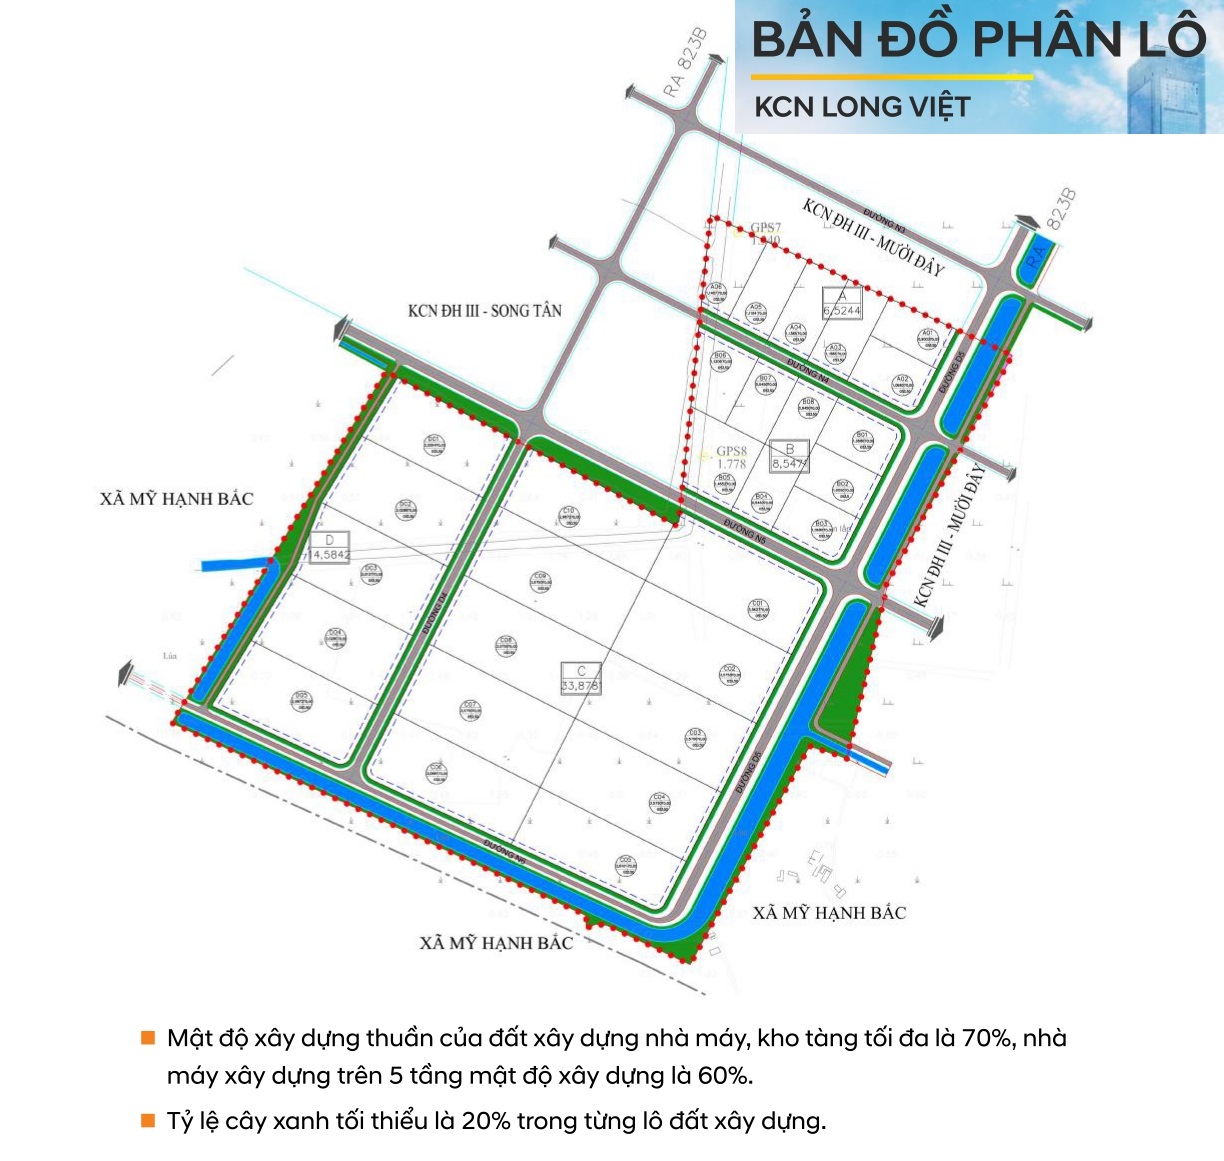 Bán 1- 20 ha đất trong khu công nghiệp Đức Hoà 3 – Long Việt, Long An.